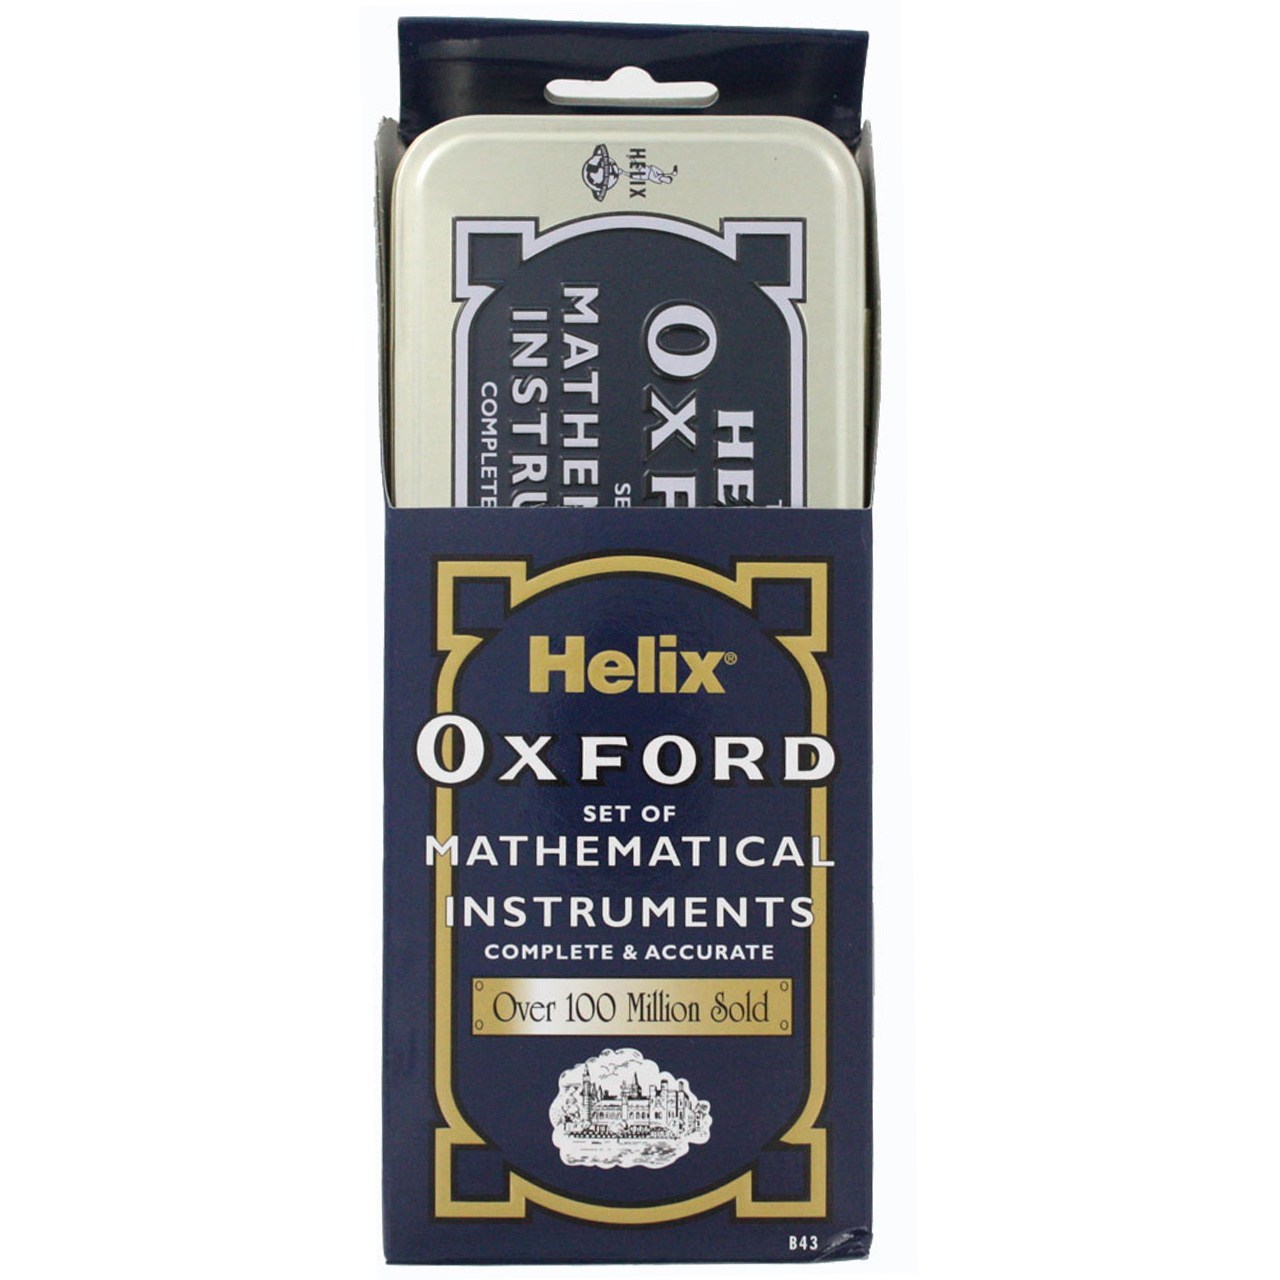 ست 8 تکه ریاضی Helix مدل Oxford کد B35